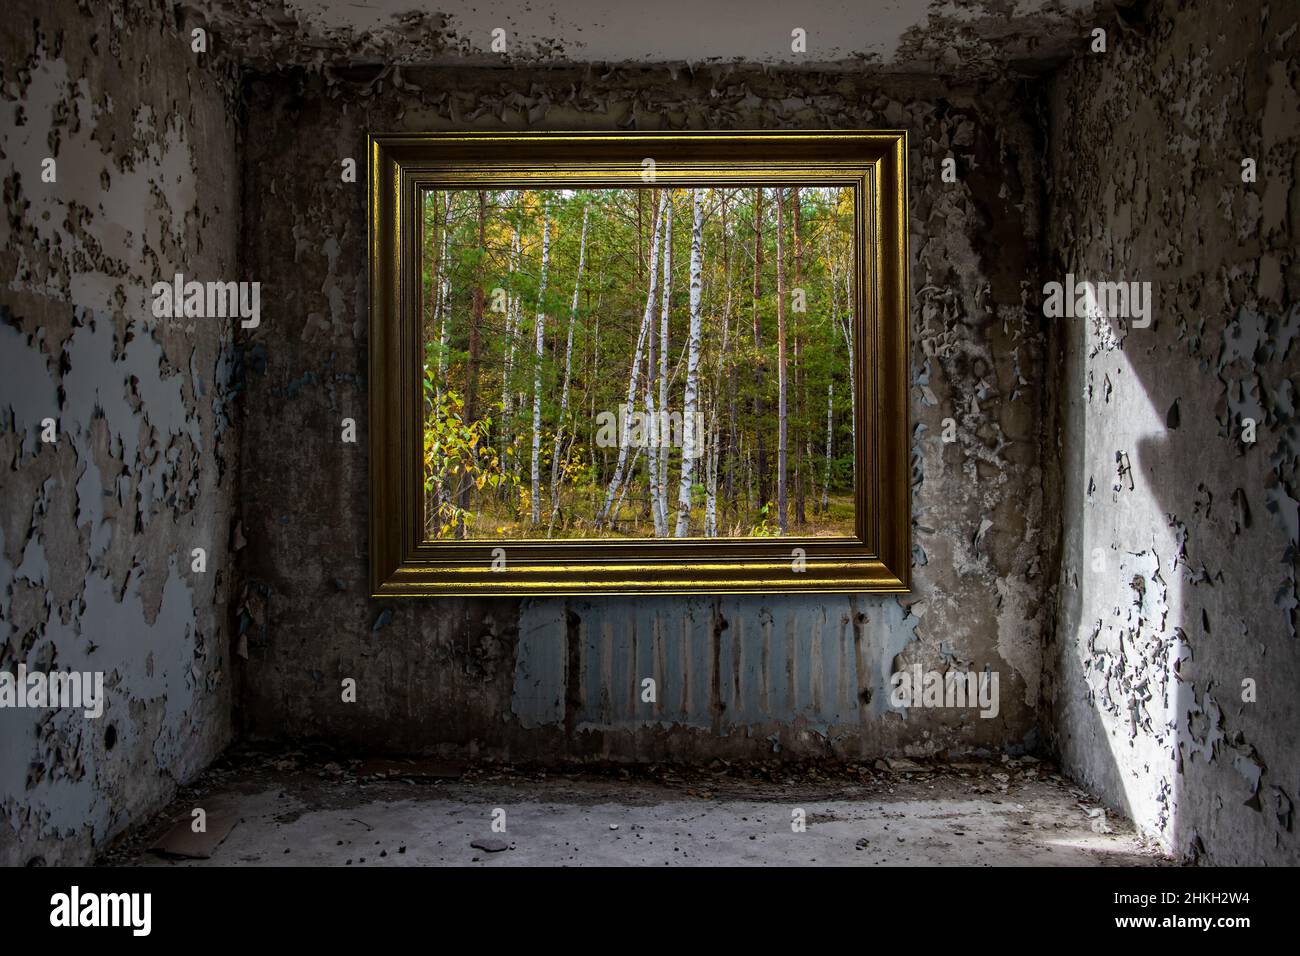 Der Blick auf einen Wald in einem Bilderrahmen an der Wand in einem verlassenen, beschädigten Raum. Stockfoto